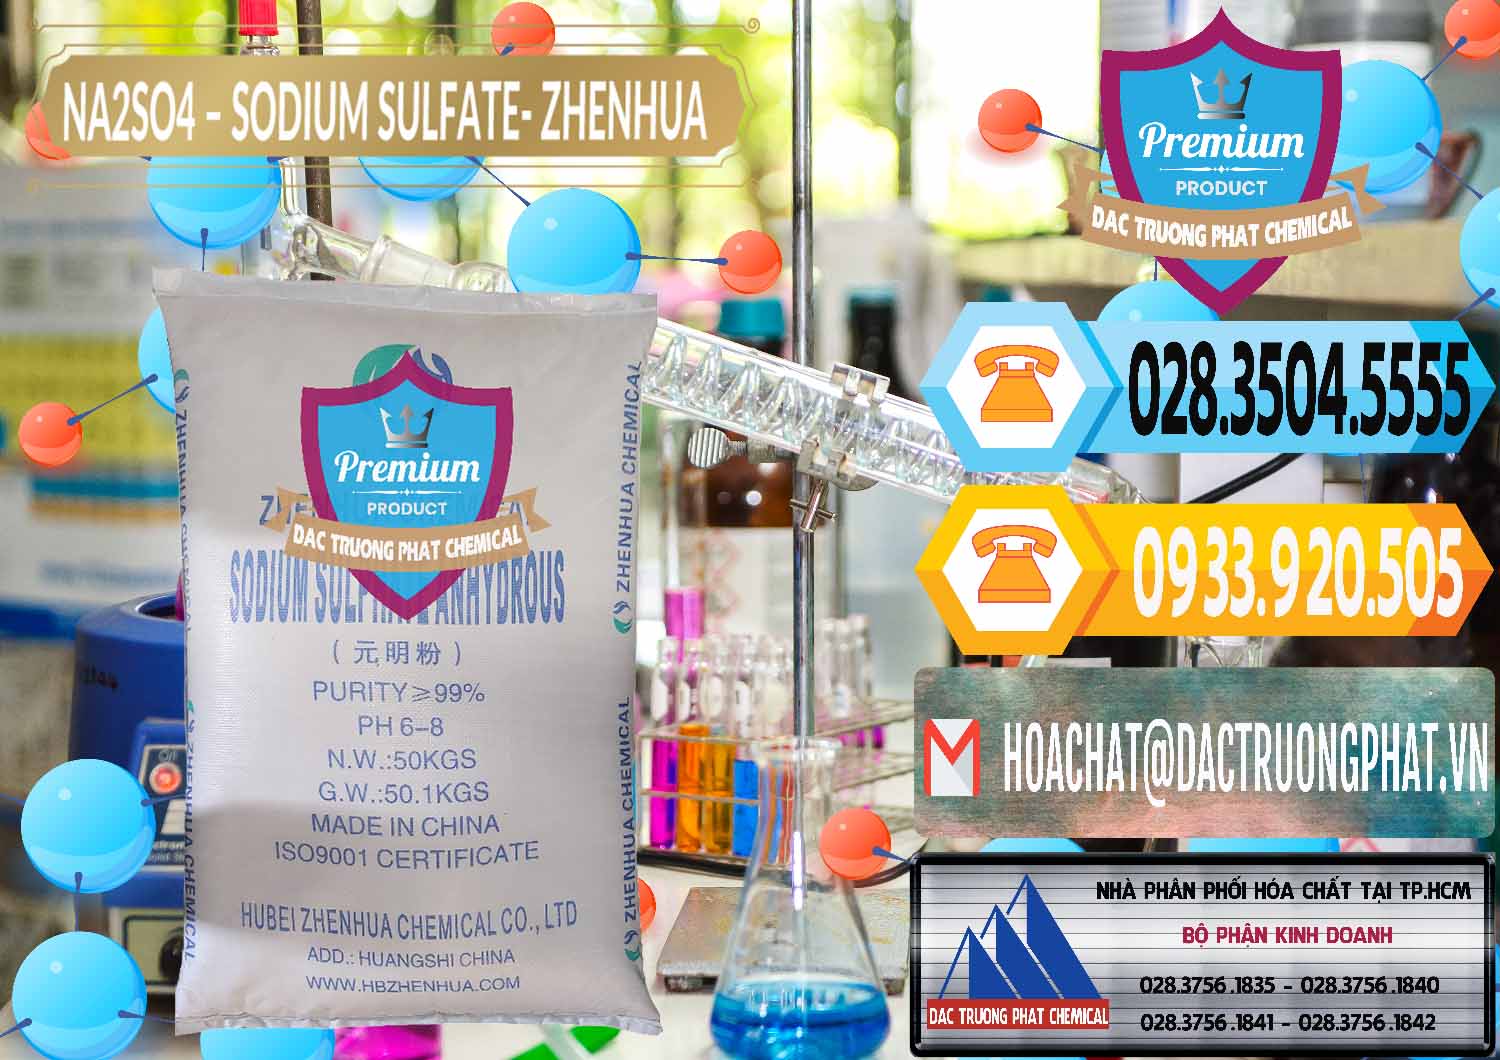 Chuyên cung ứng - bán Sodium Sulphate - Muối Sunfat Na2SO4 Zhenhua Trung Quốc China - 0101 - Chuyên cung ứng ( phân phối ) hóa chất tại TP.HCM - hoachattayrua.net